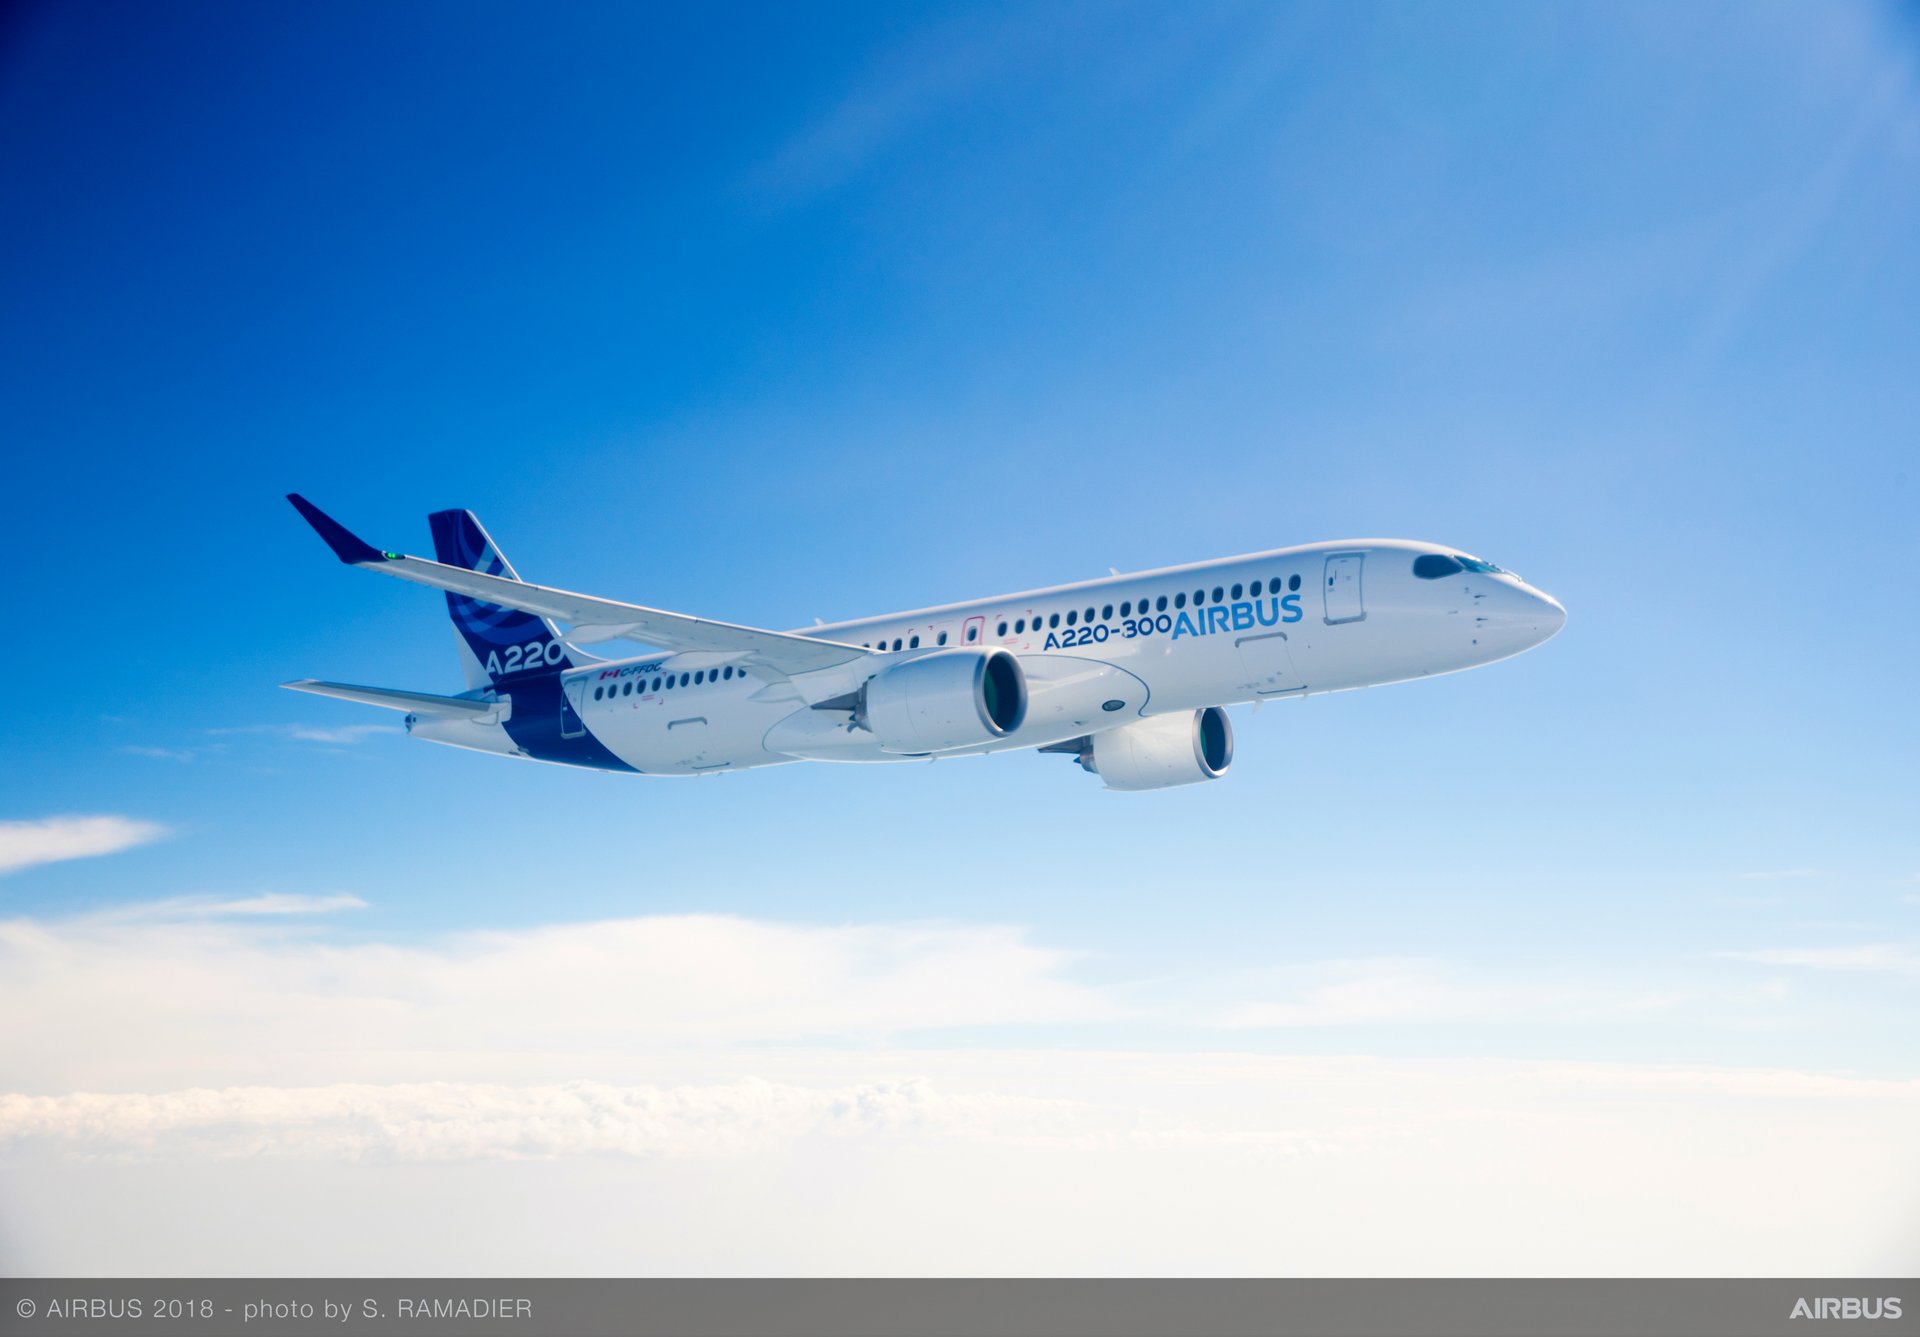 Î‘Ï€Î¿Ï„Î­Î»ÎµÏƒÎ¼Î± ÎµÎ¹ÎºÏŒÎ½Î±Ï‚ Î³Î¹Î± Airbus A220 Embarks on Demonstration Tour Across Asia